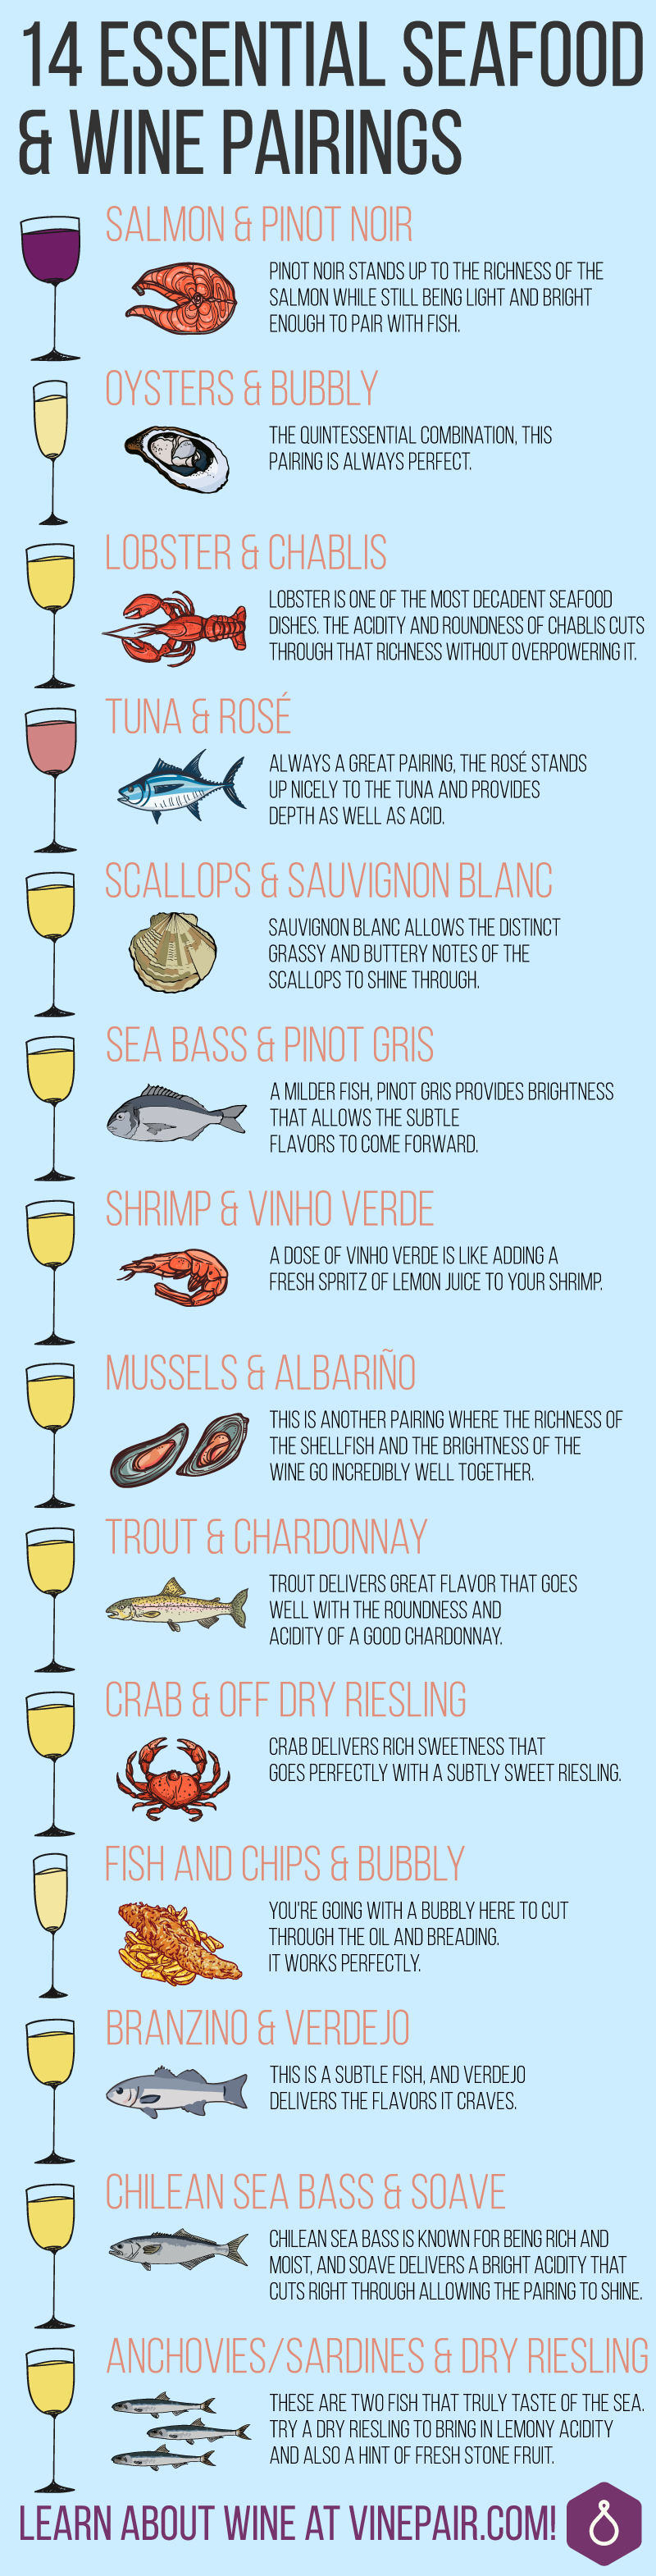 seafood-wine-pairings